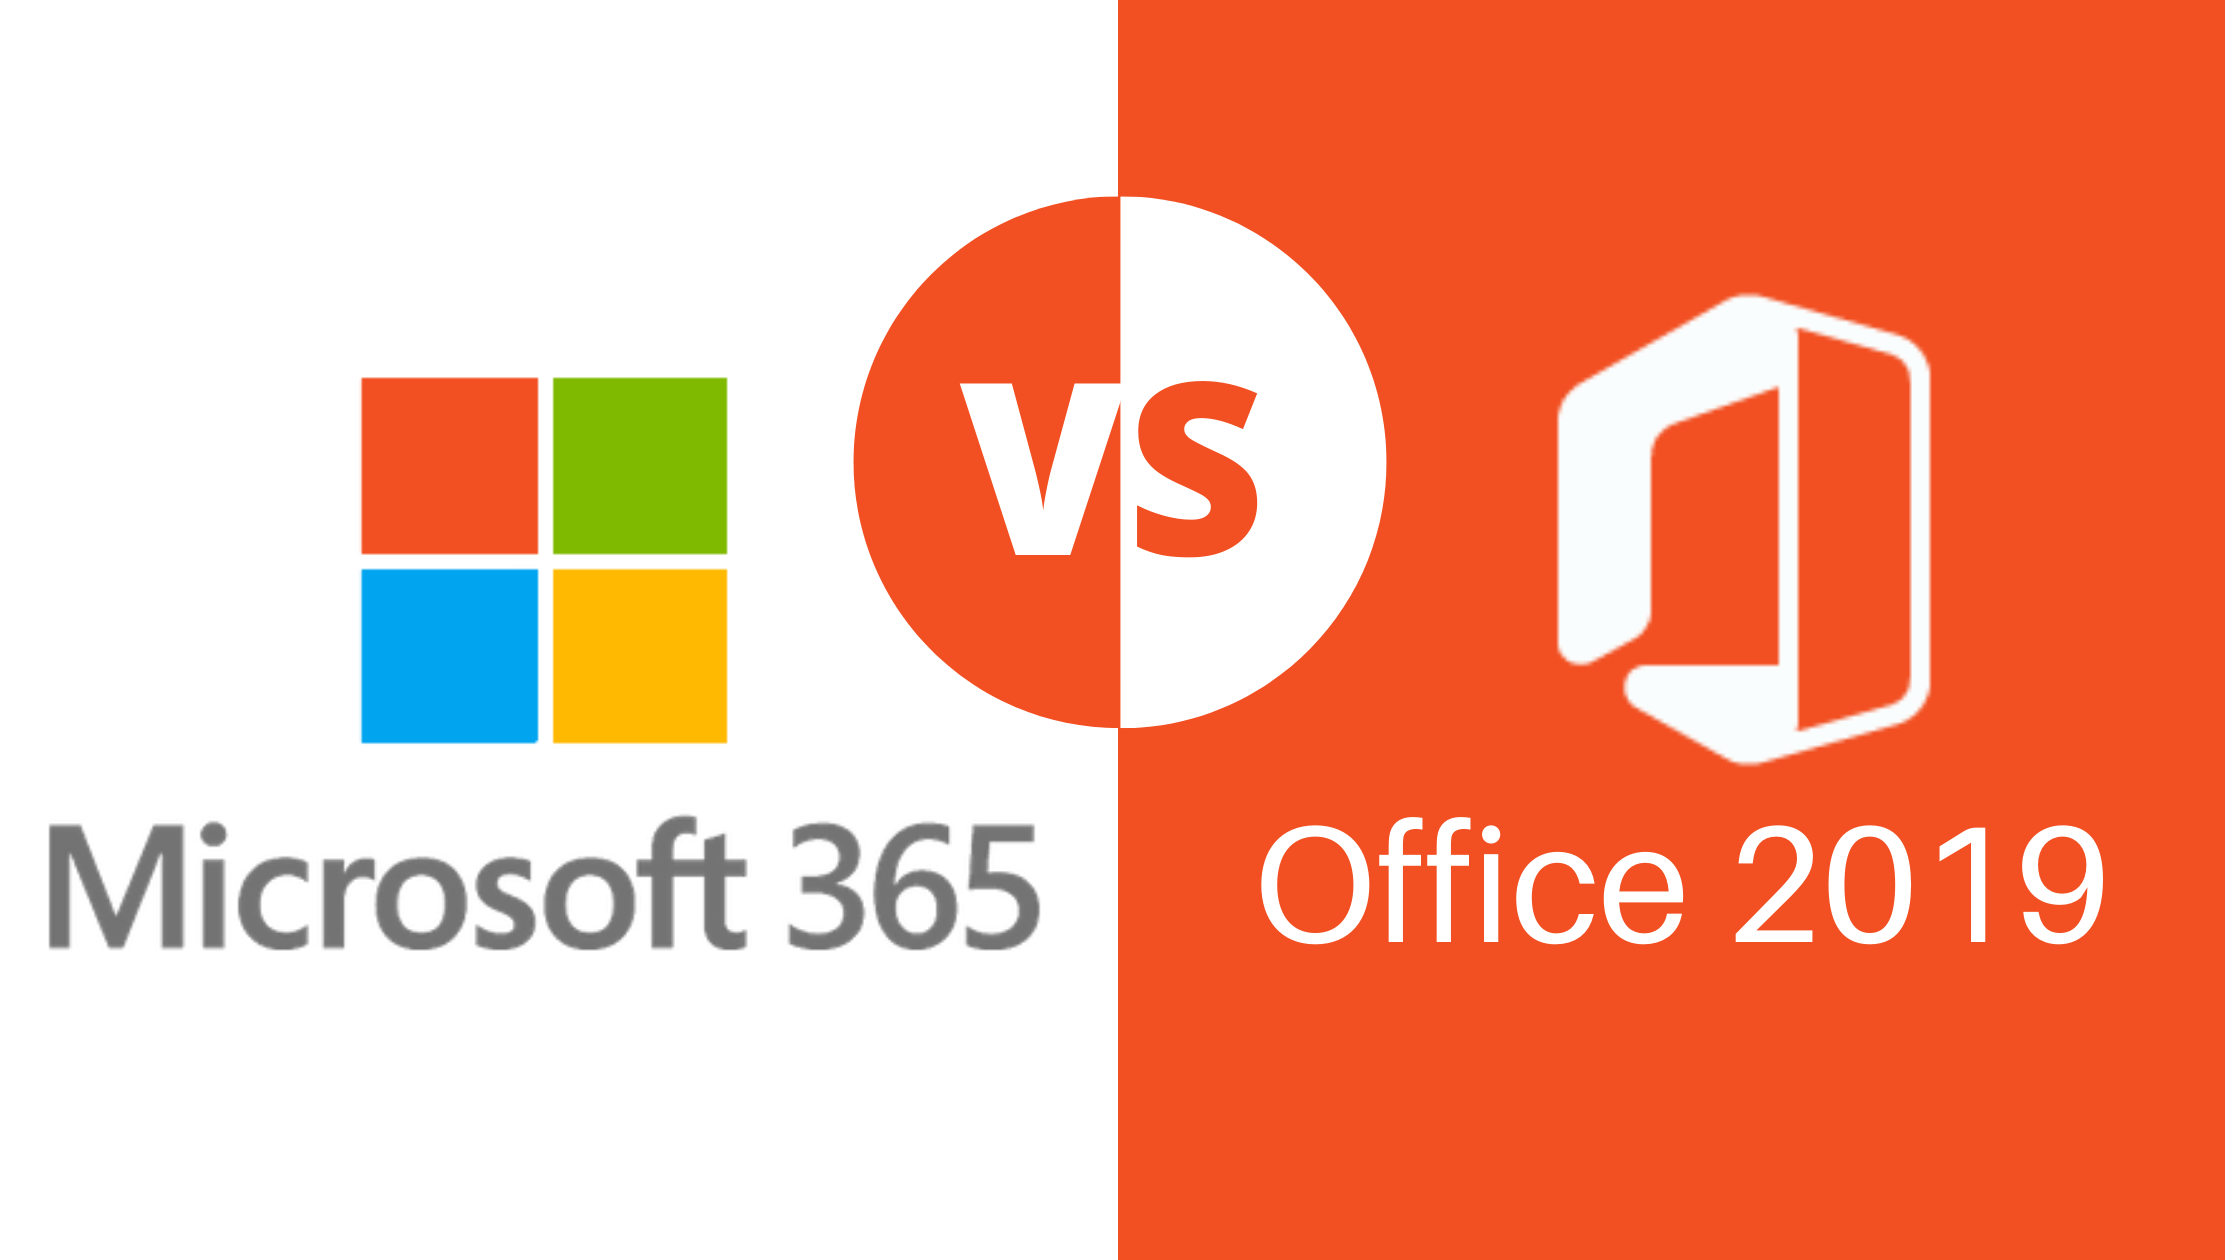 Office 2019 vs. Microsoft 365